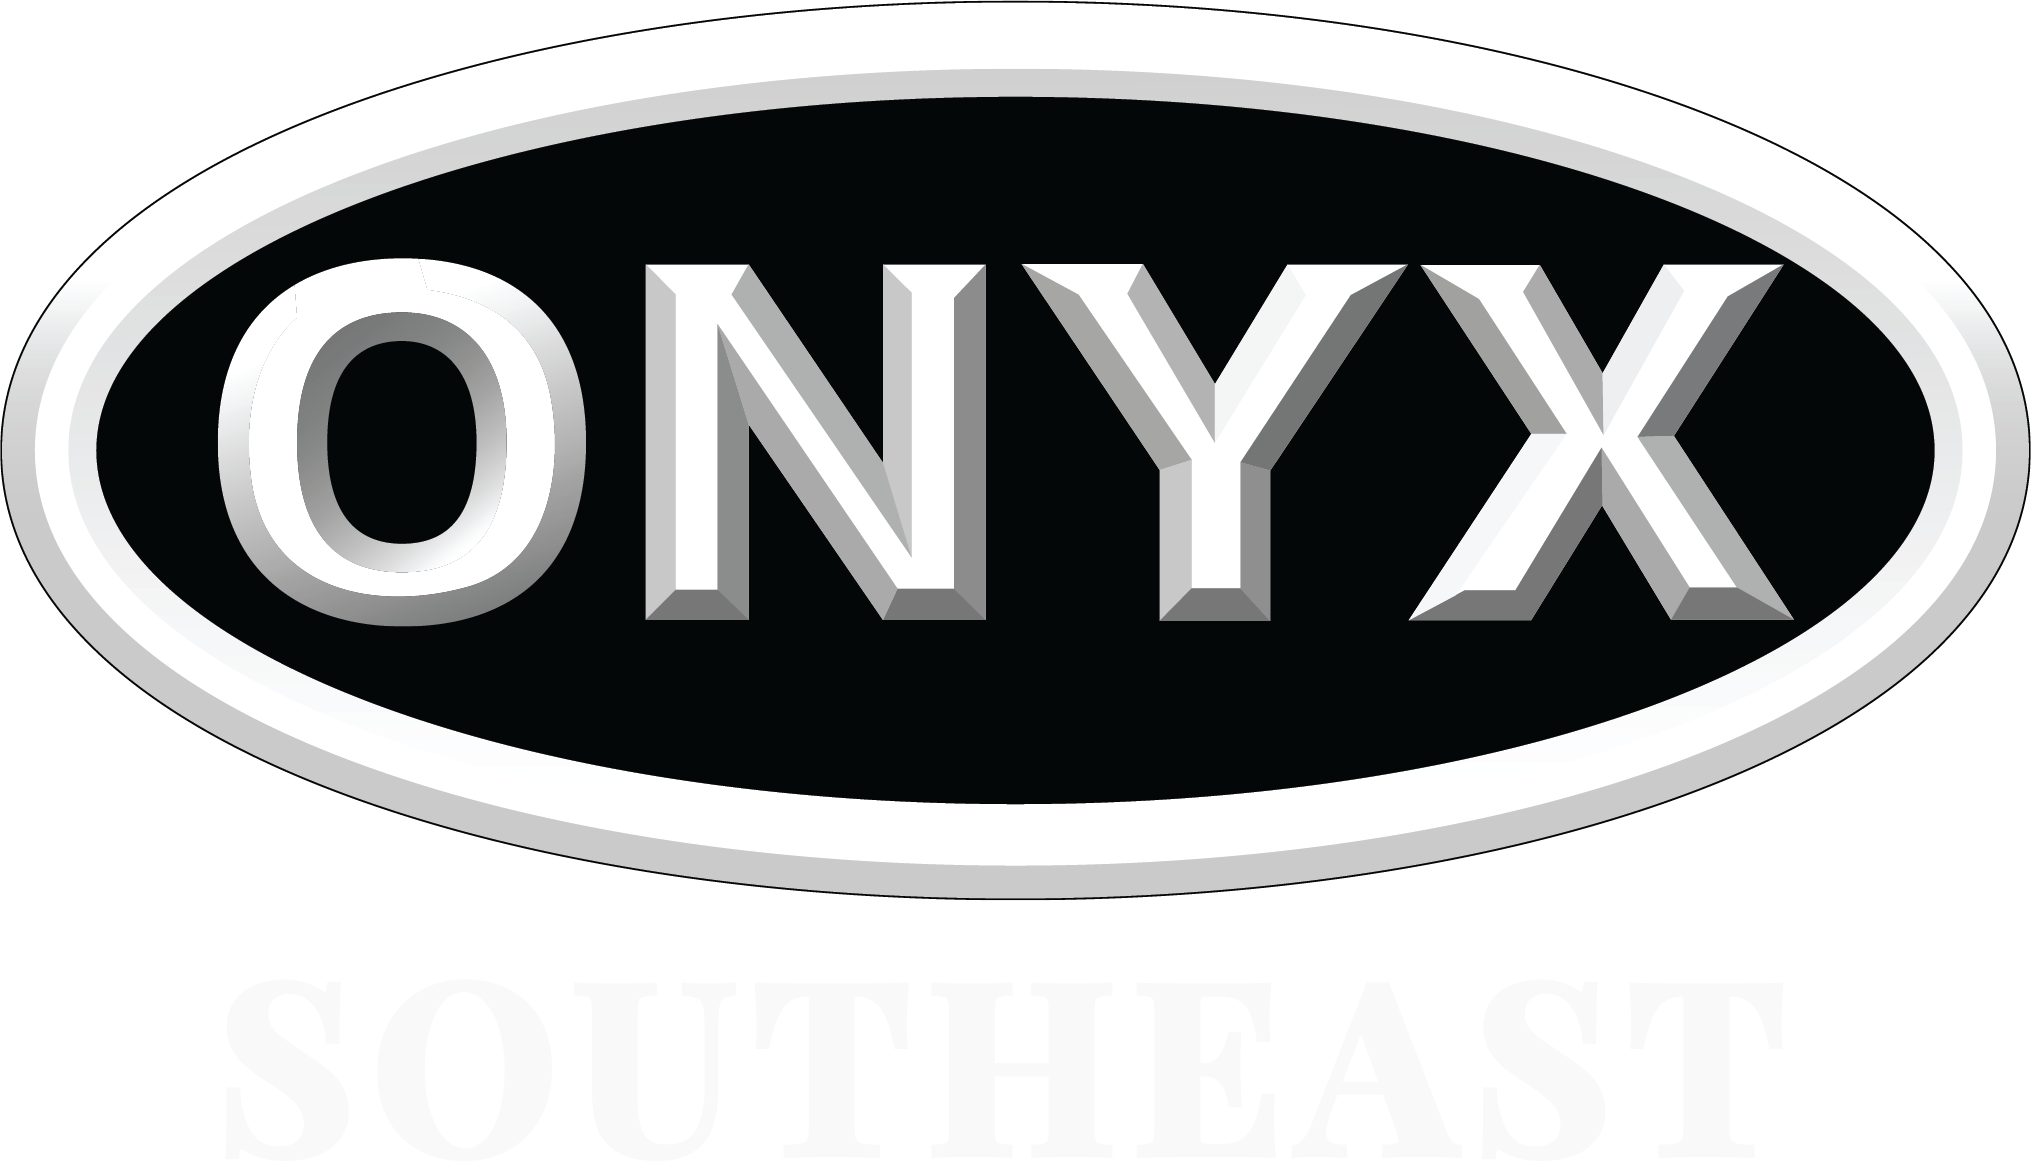 Onyx Southeast